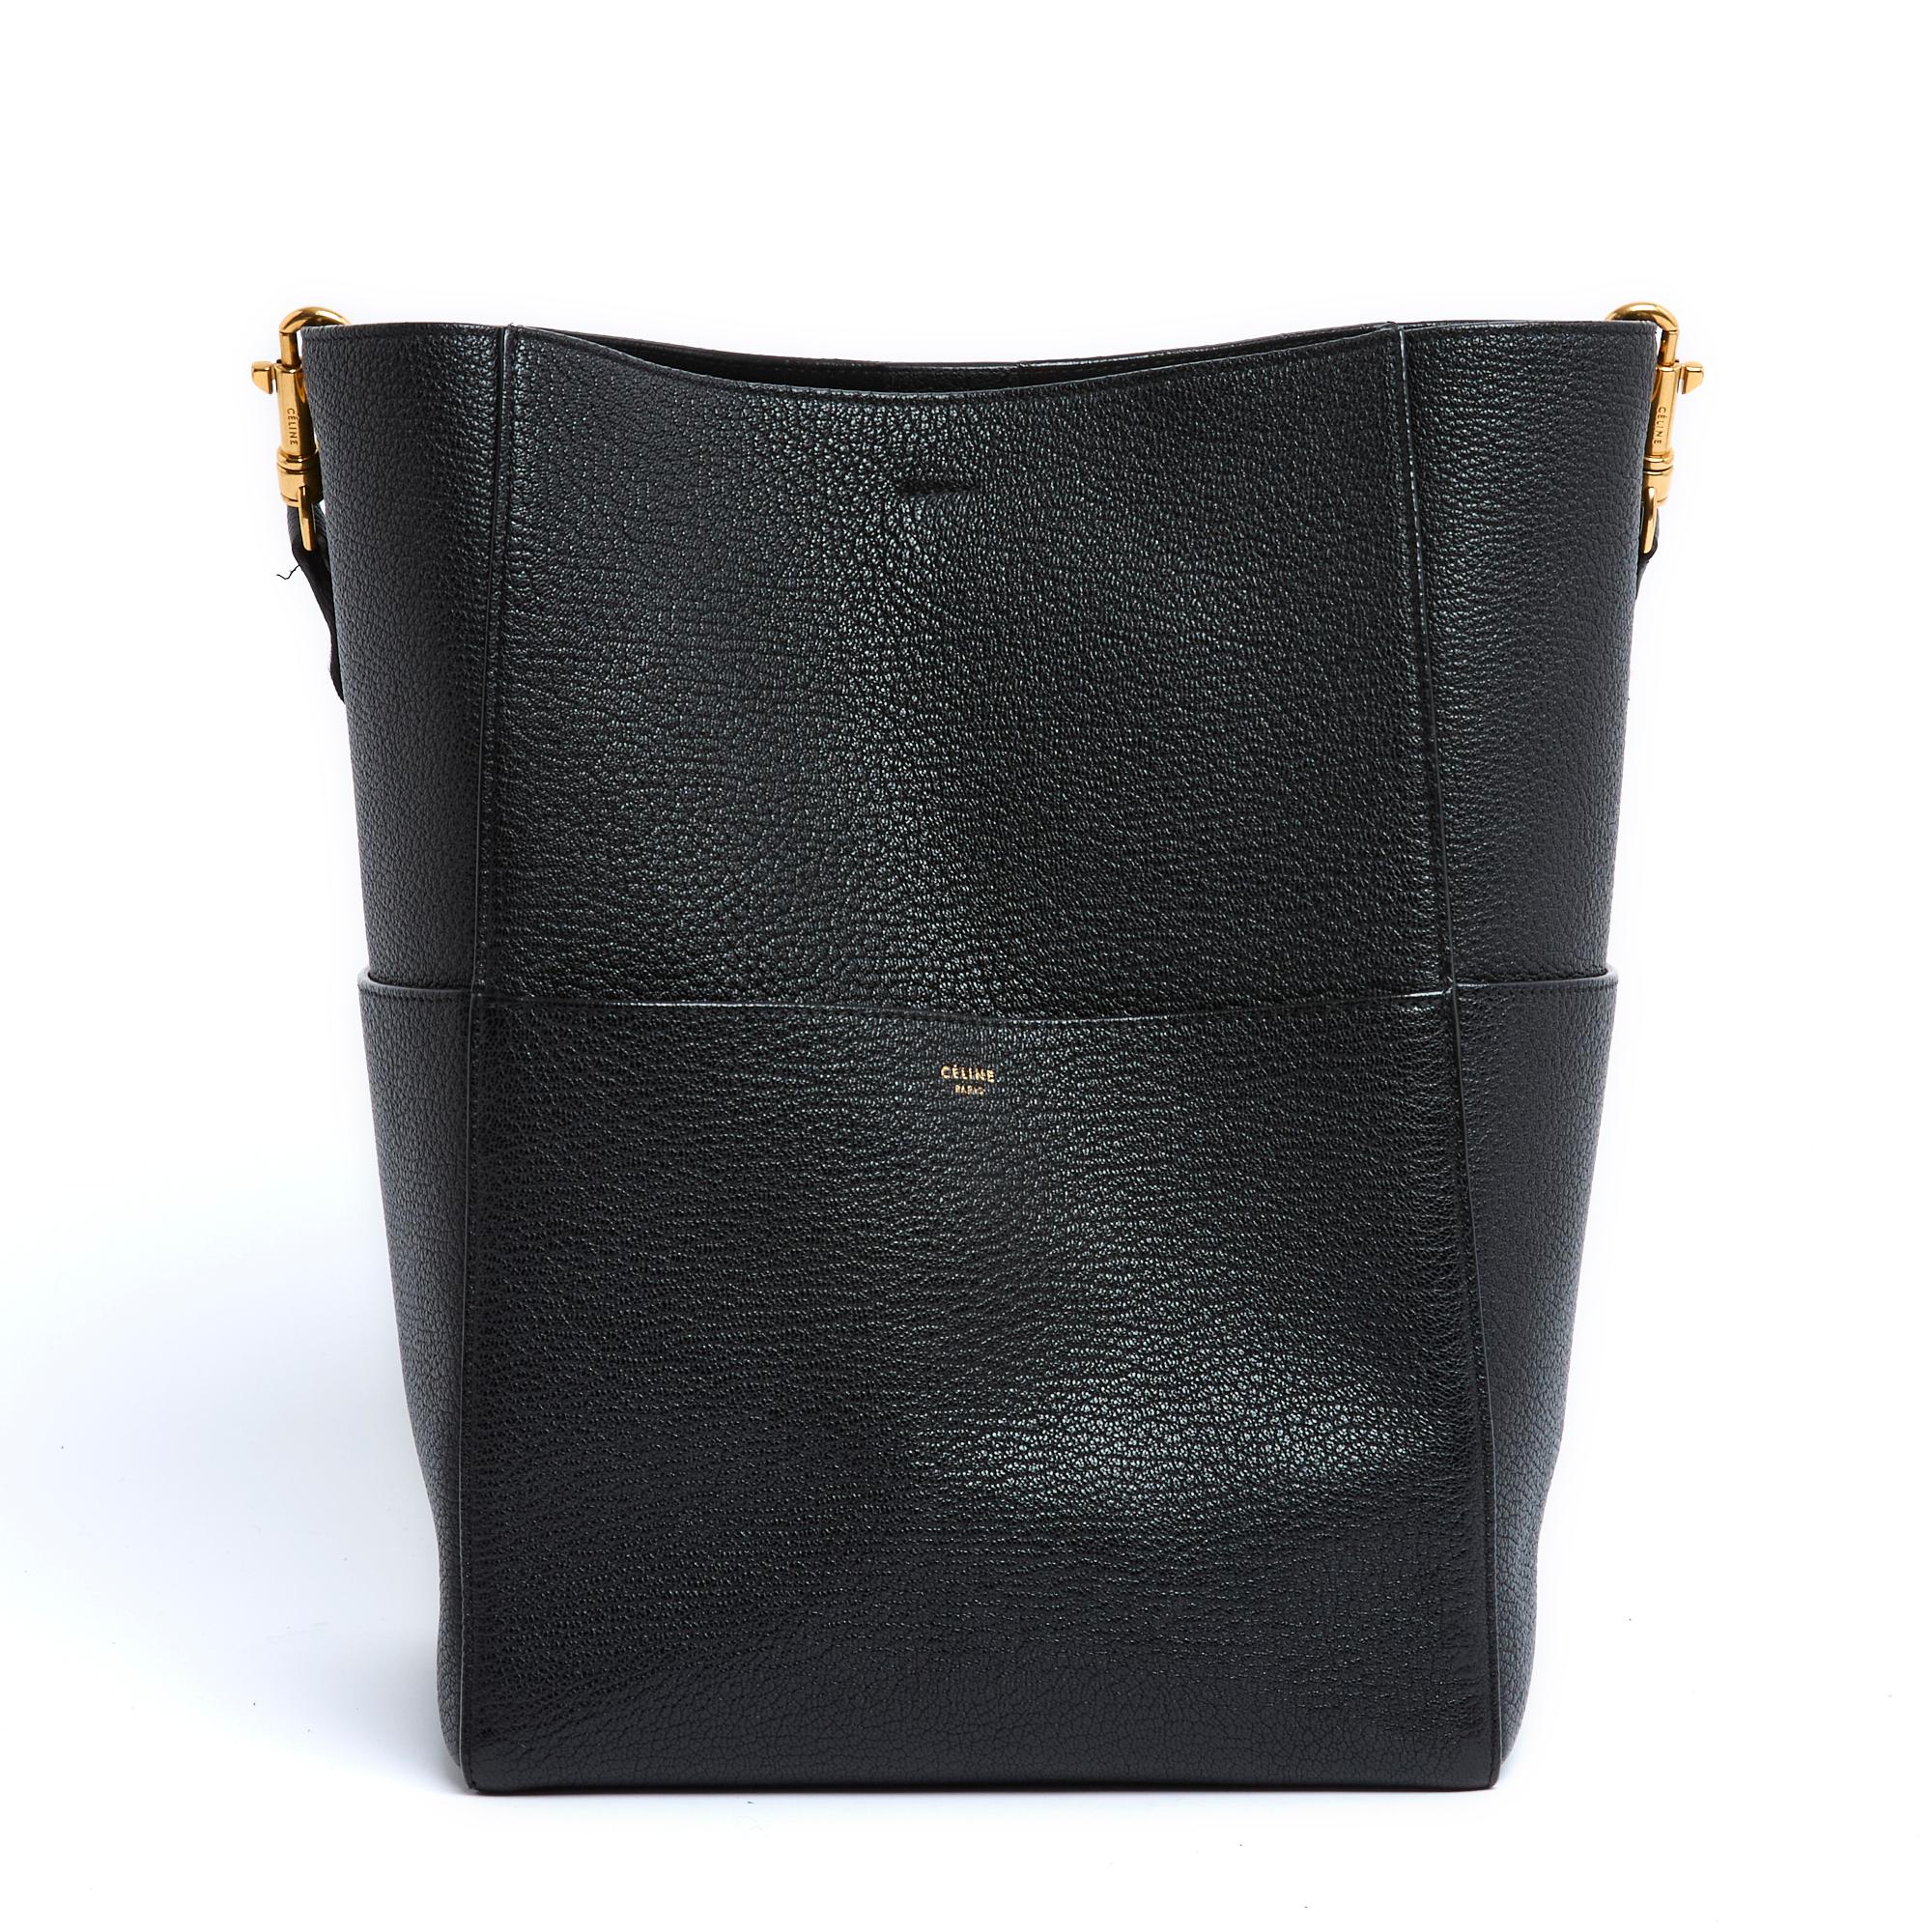 Sac Celine Sangle Black Bucket Bag de Phoebe Philo Excellent état à PARIS, FR